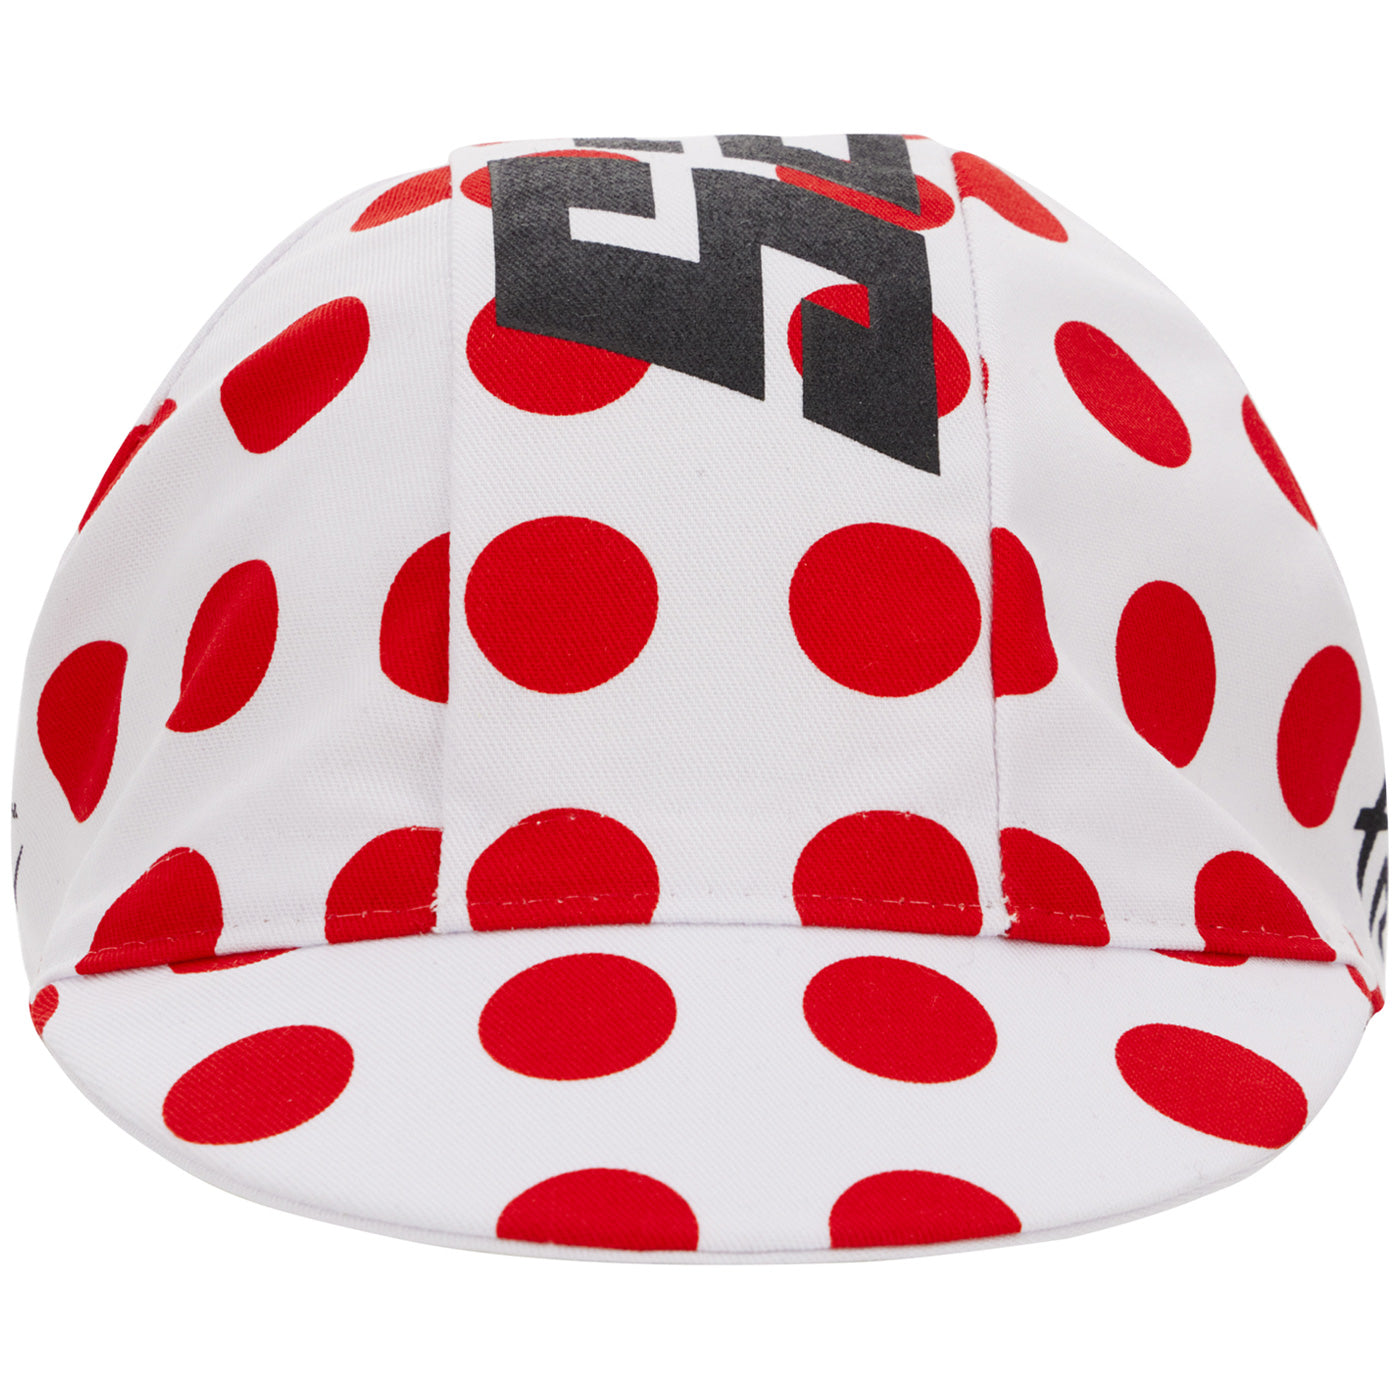 Tour de France cycling cap - Polka dots